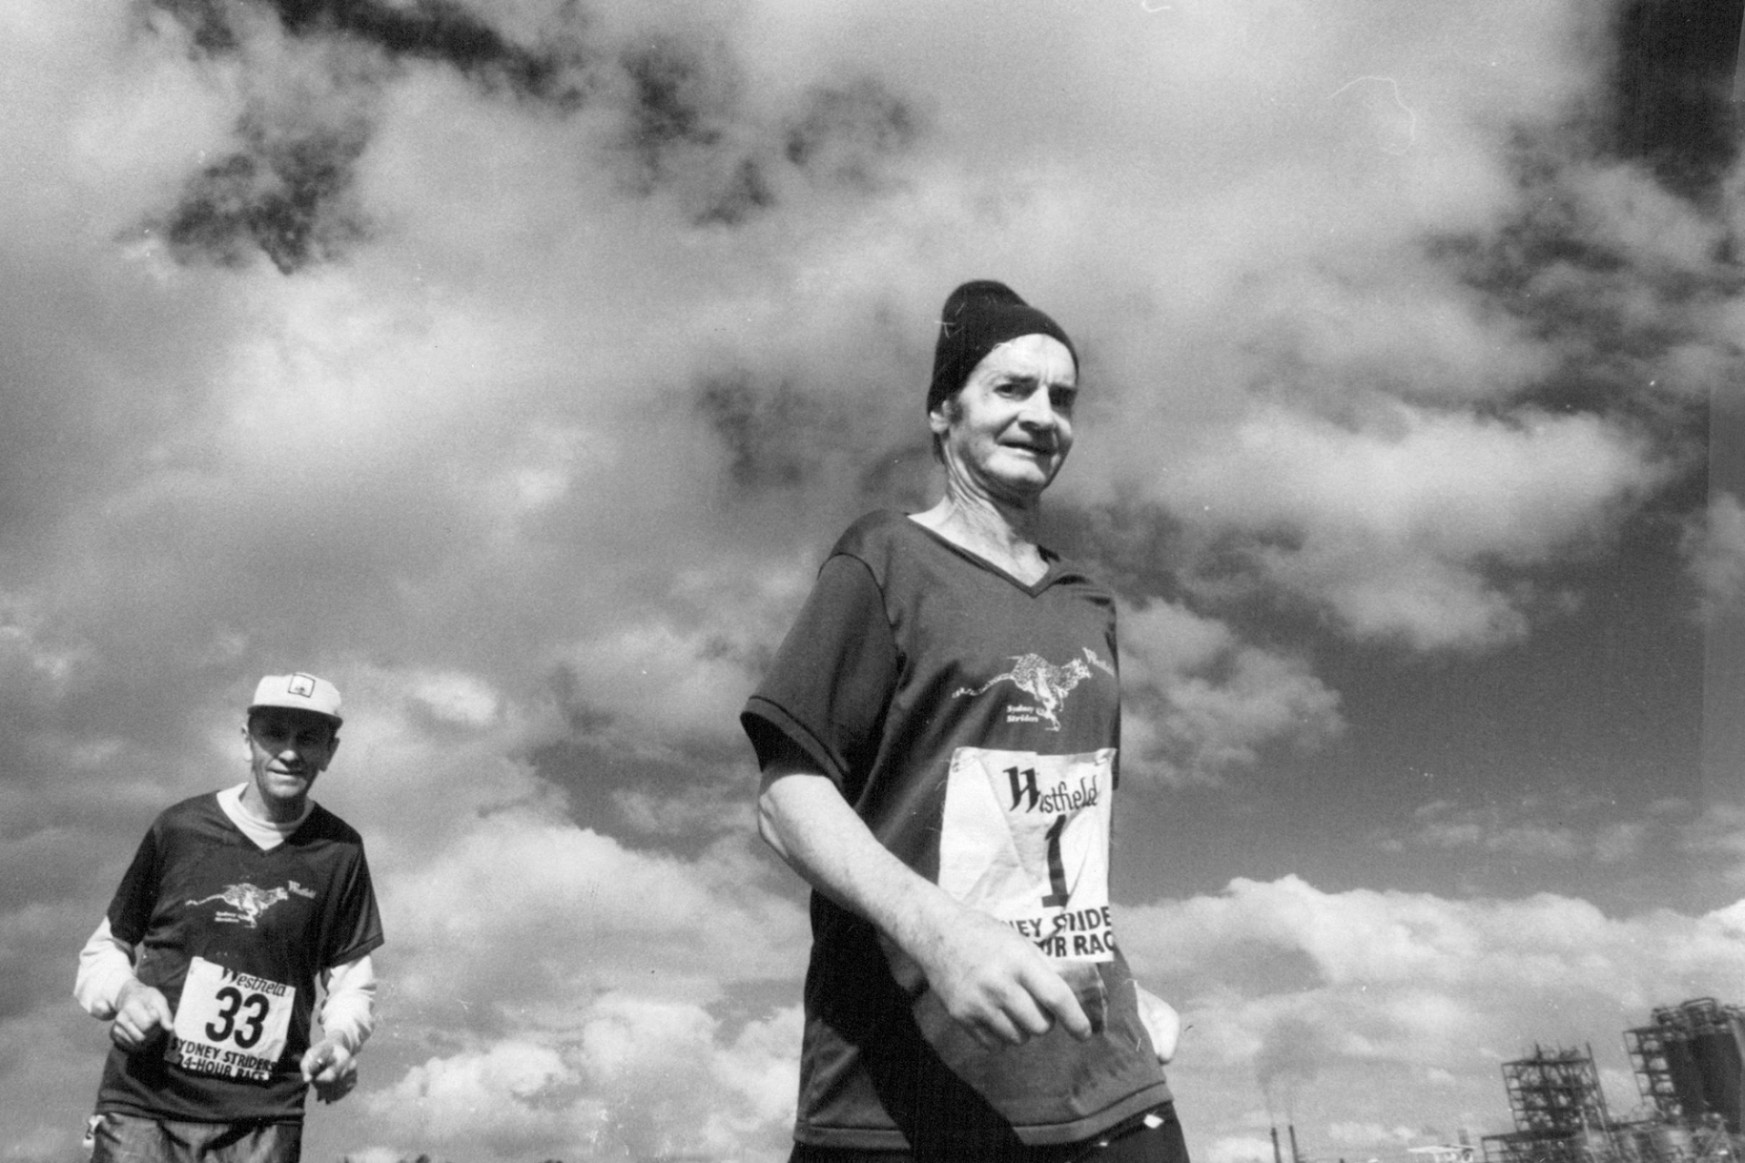 Az ausztrál farmer, aki 61 évesen, szűzen és gumicsizmában futva nyerte meg az ausztrál ultramaratont